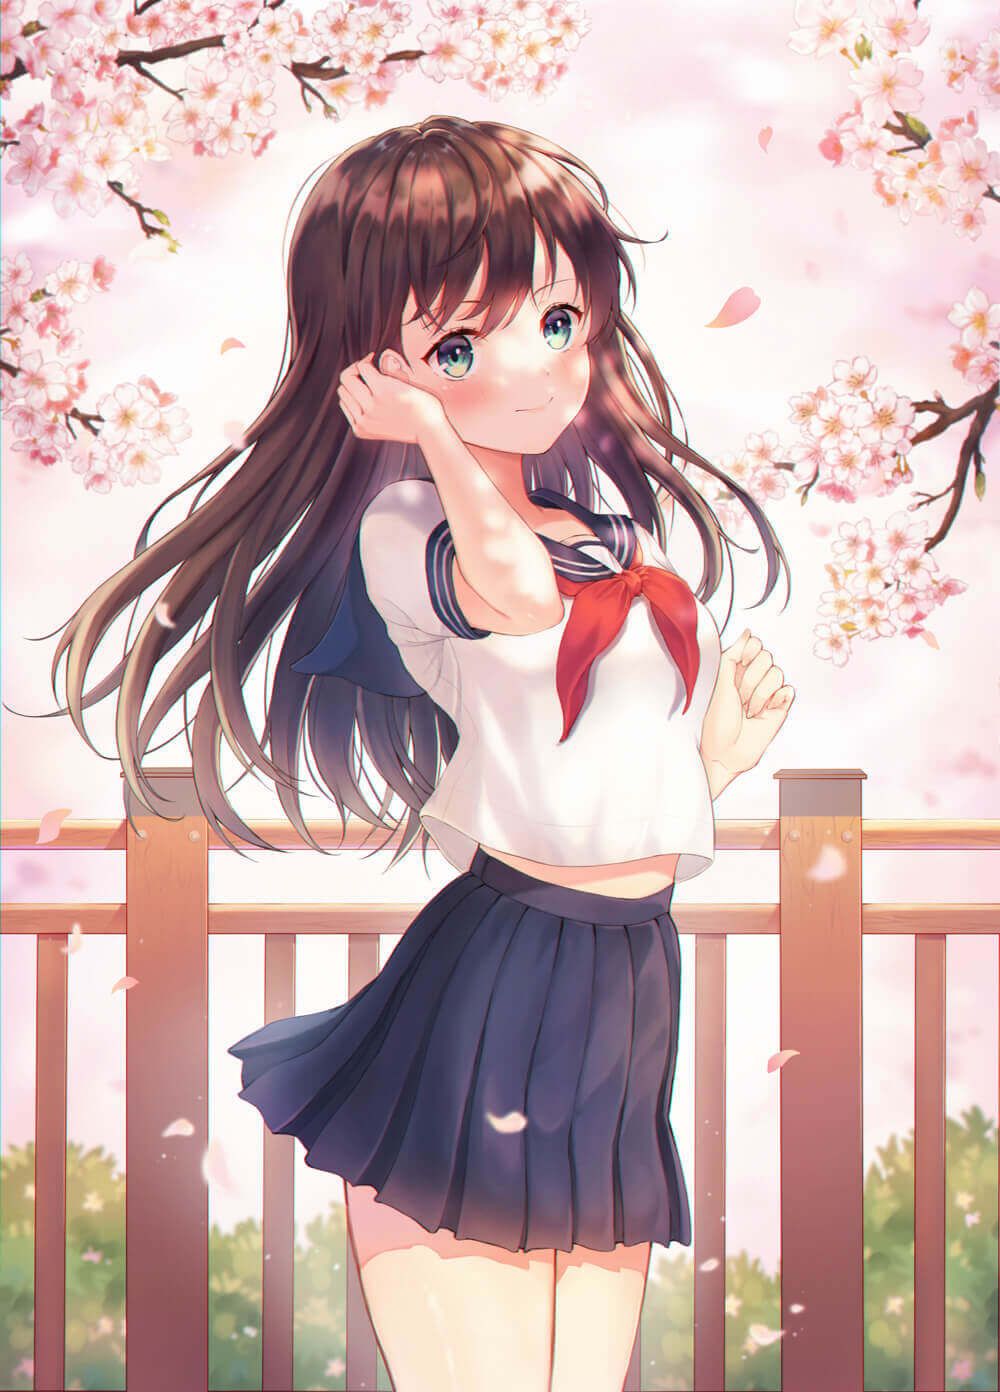 【2D】Erotic cute image of schoolgirl wearing school uniform (blazer sailor) 12